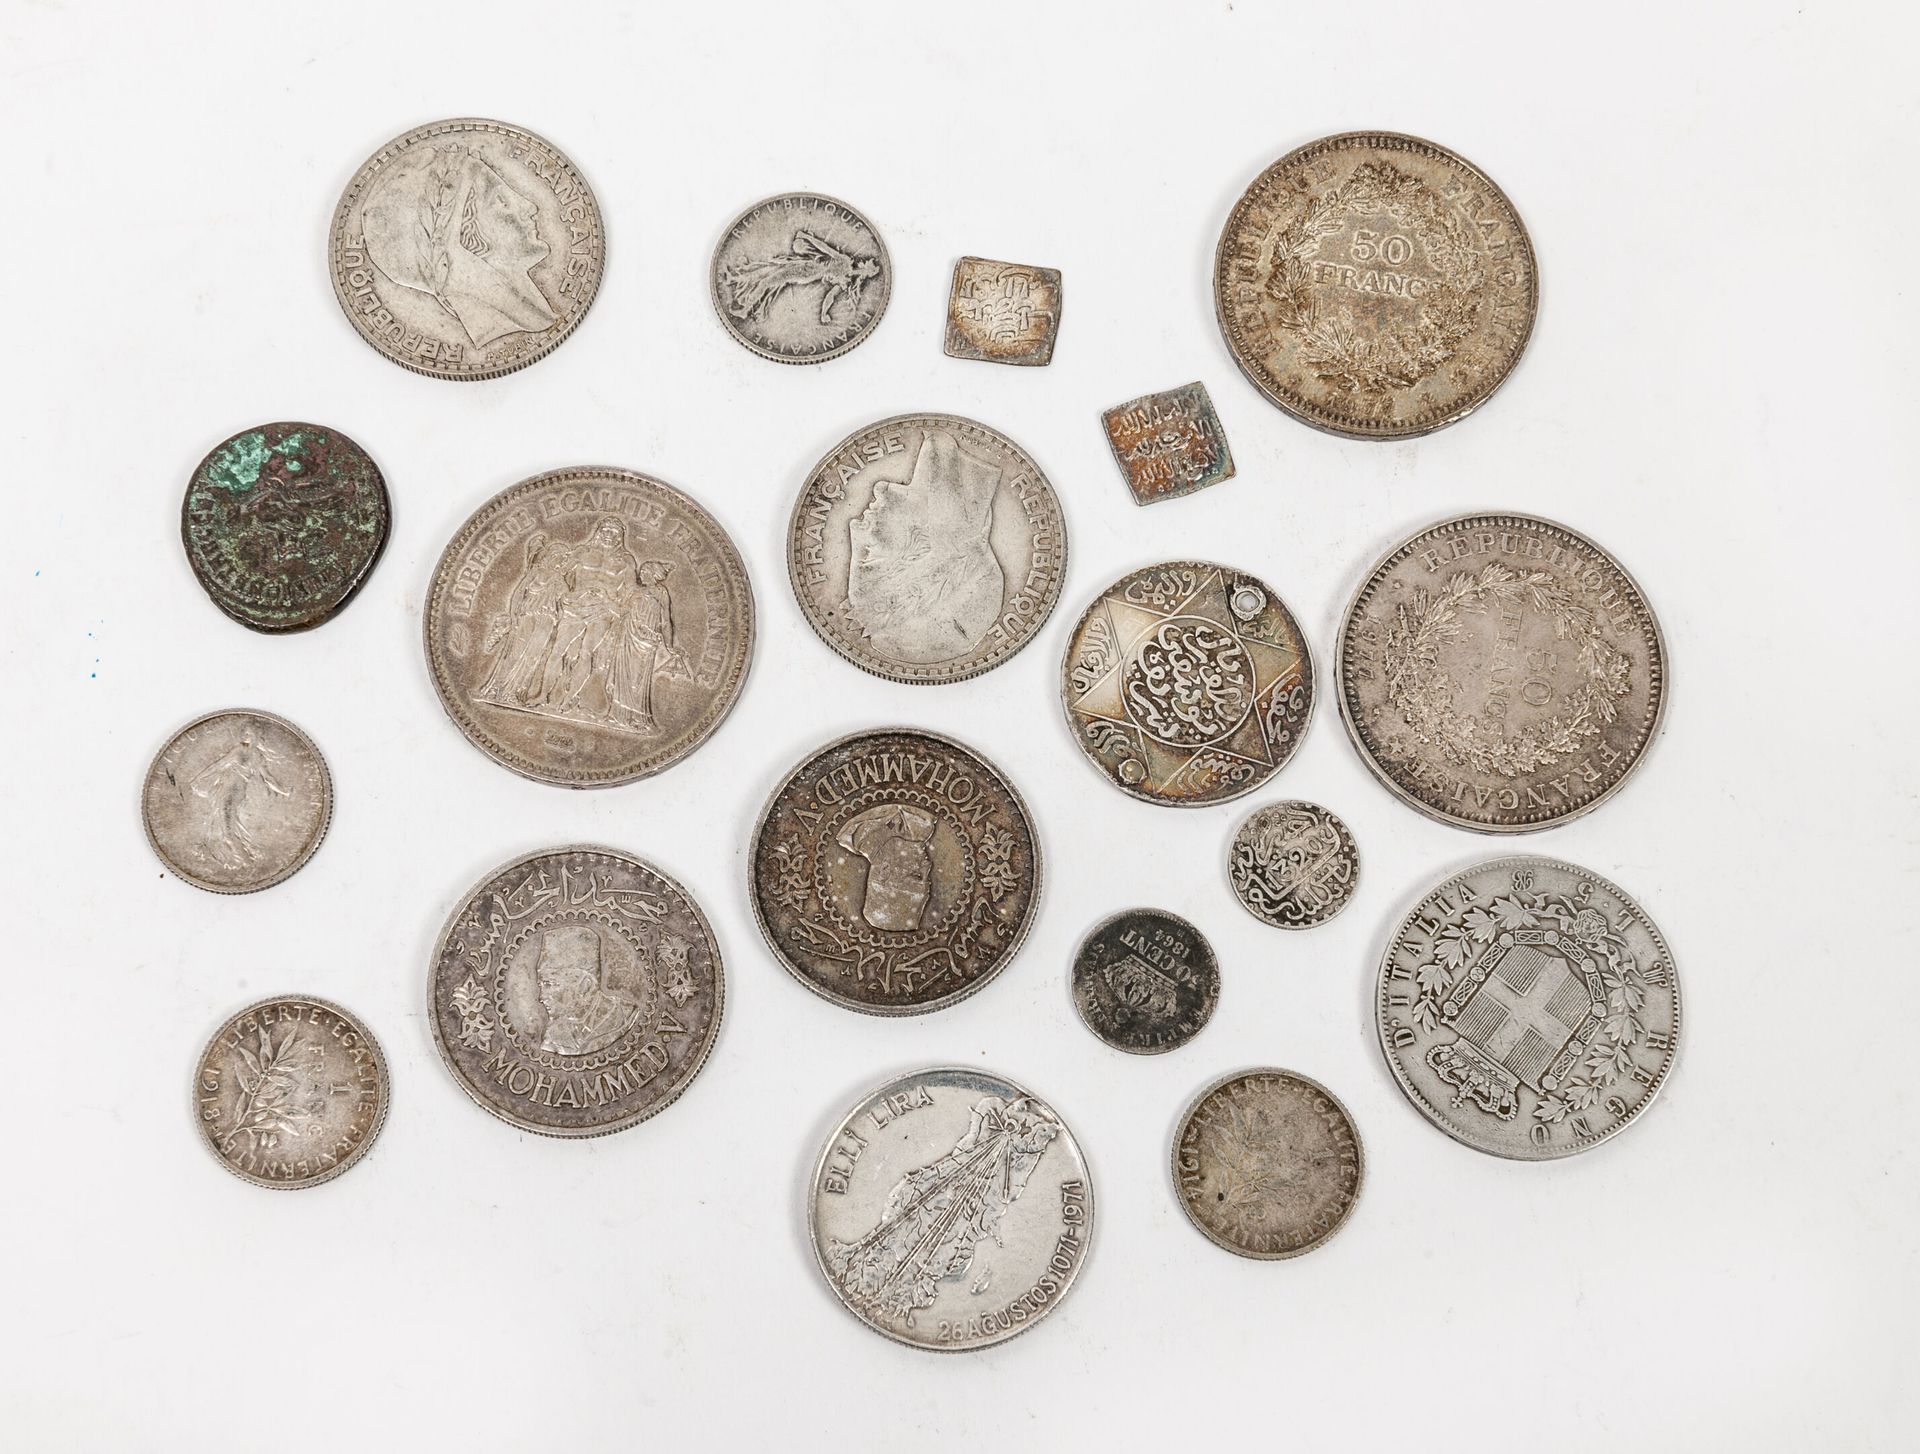 FRANCE et divers, XIXème siècle Lote de 18 monedas de plata, incluyendo :

- 10 &hellip;